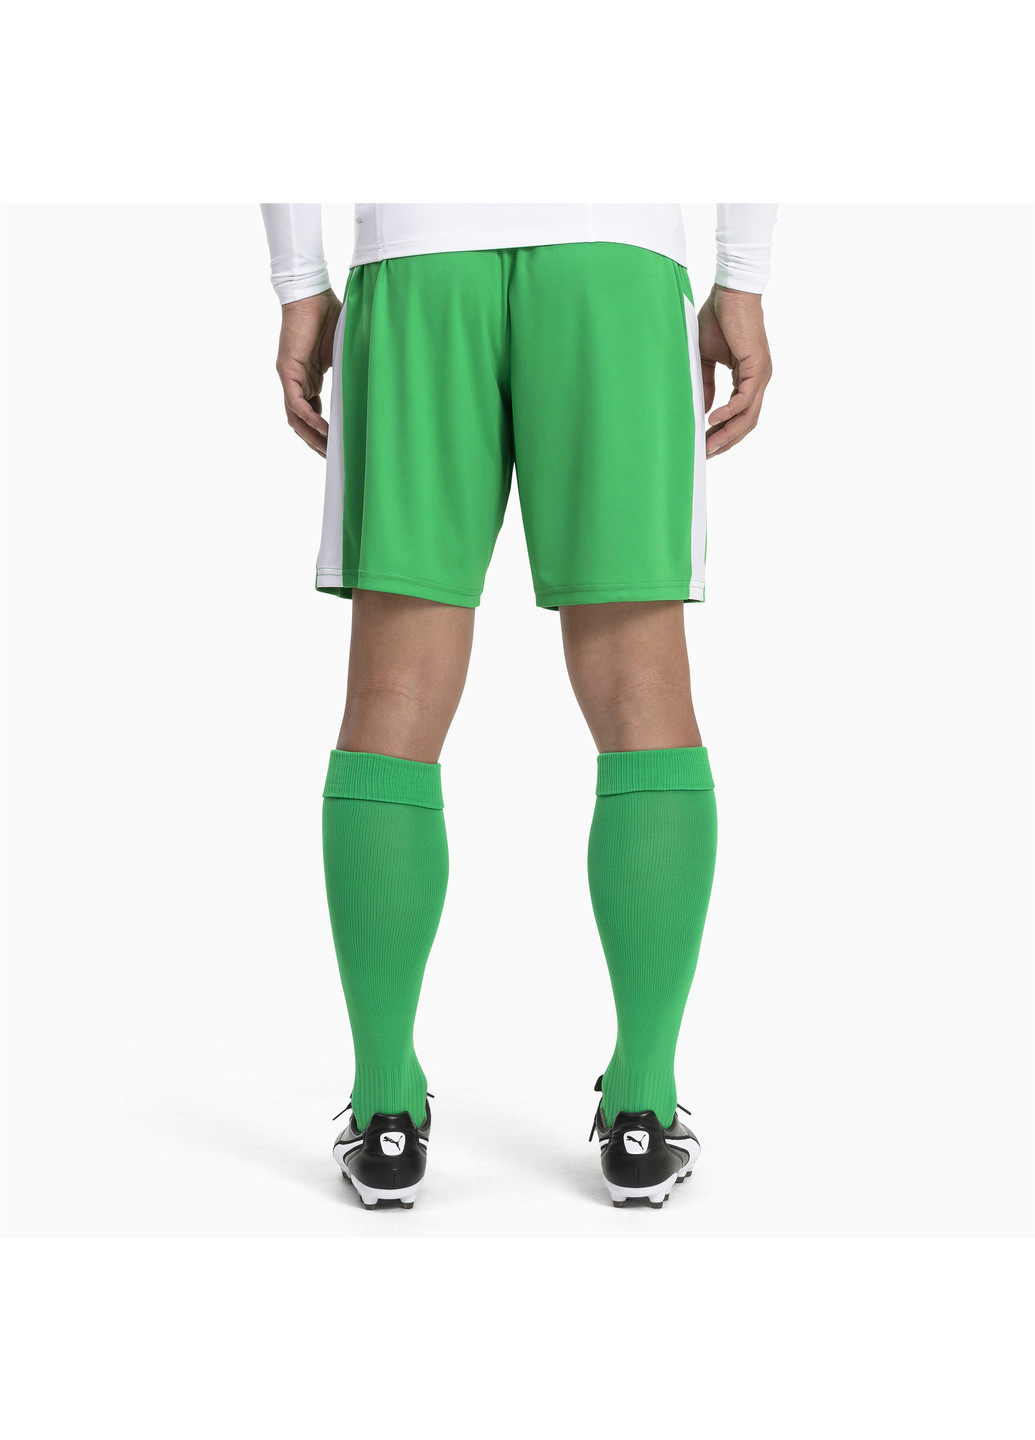 Носки Football Men’s LIGA Core Socks Puma однотонные зелёные спортивные